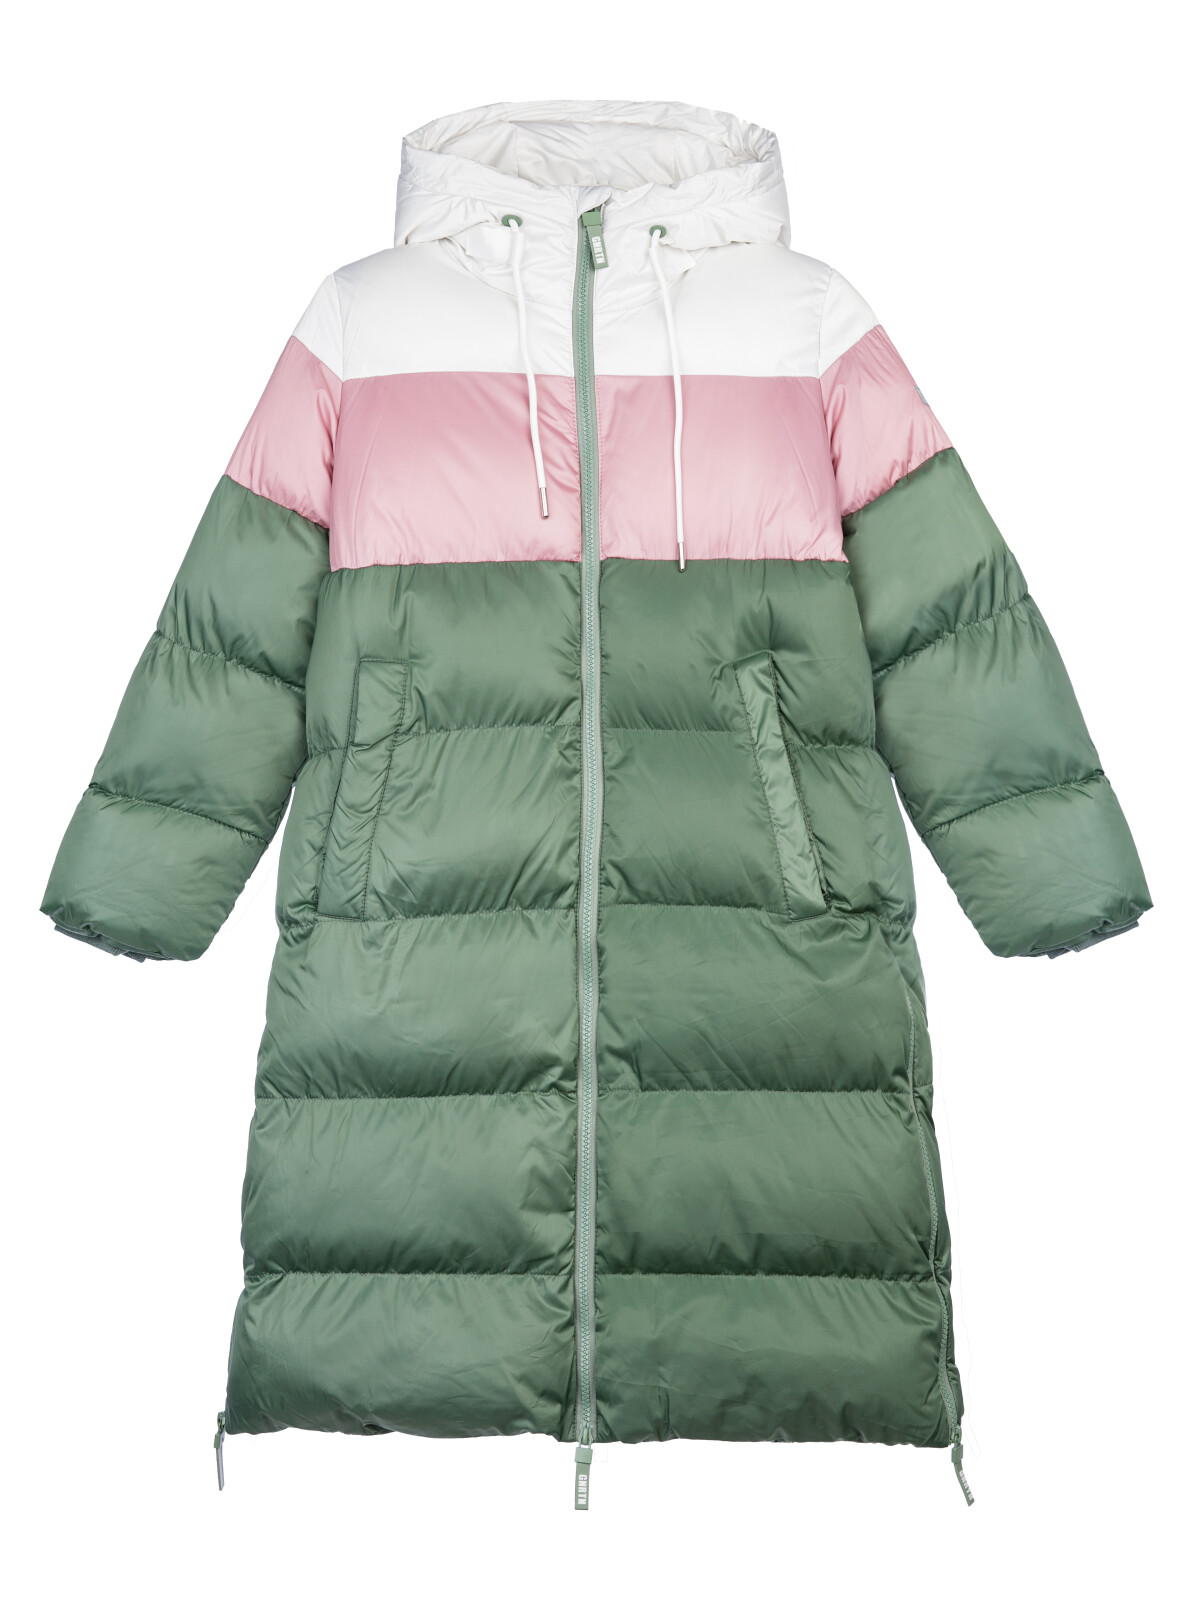 Пальто текстильное для девочек PlayToday, серебро,коричневый,темно-зеленый, 164